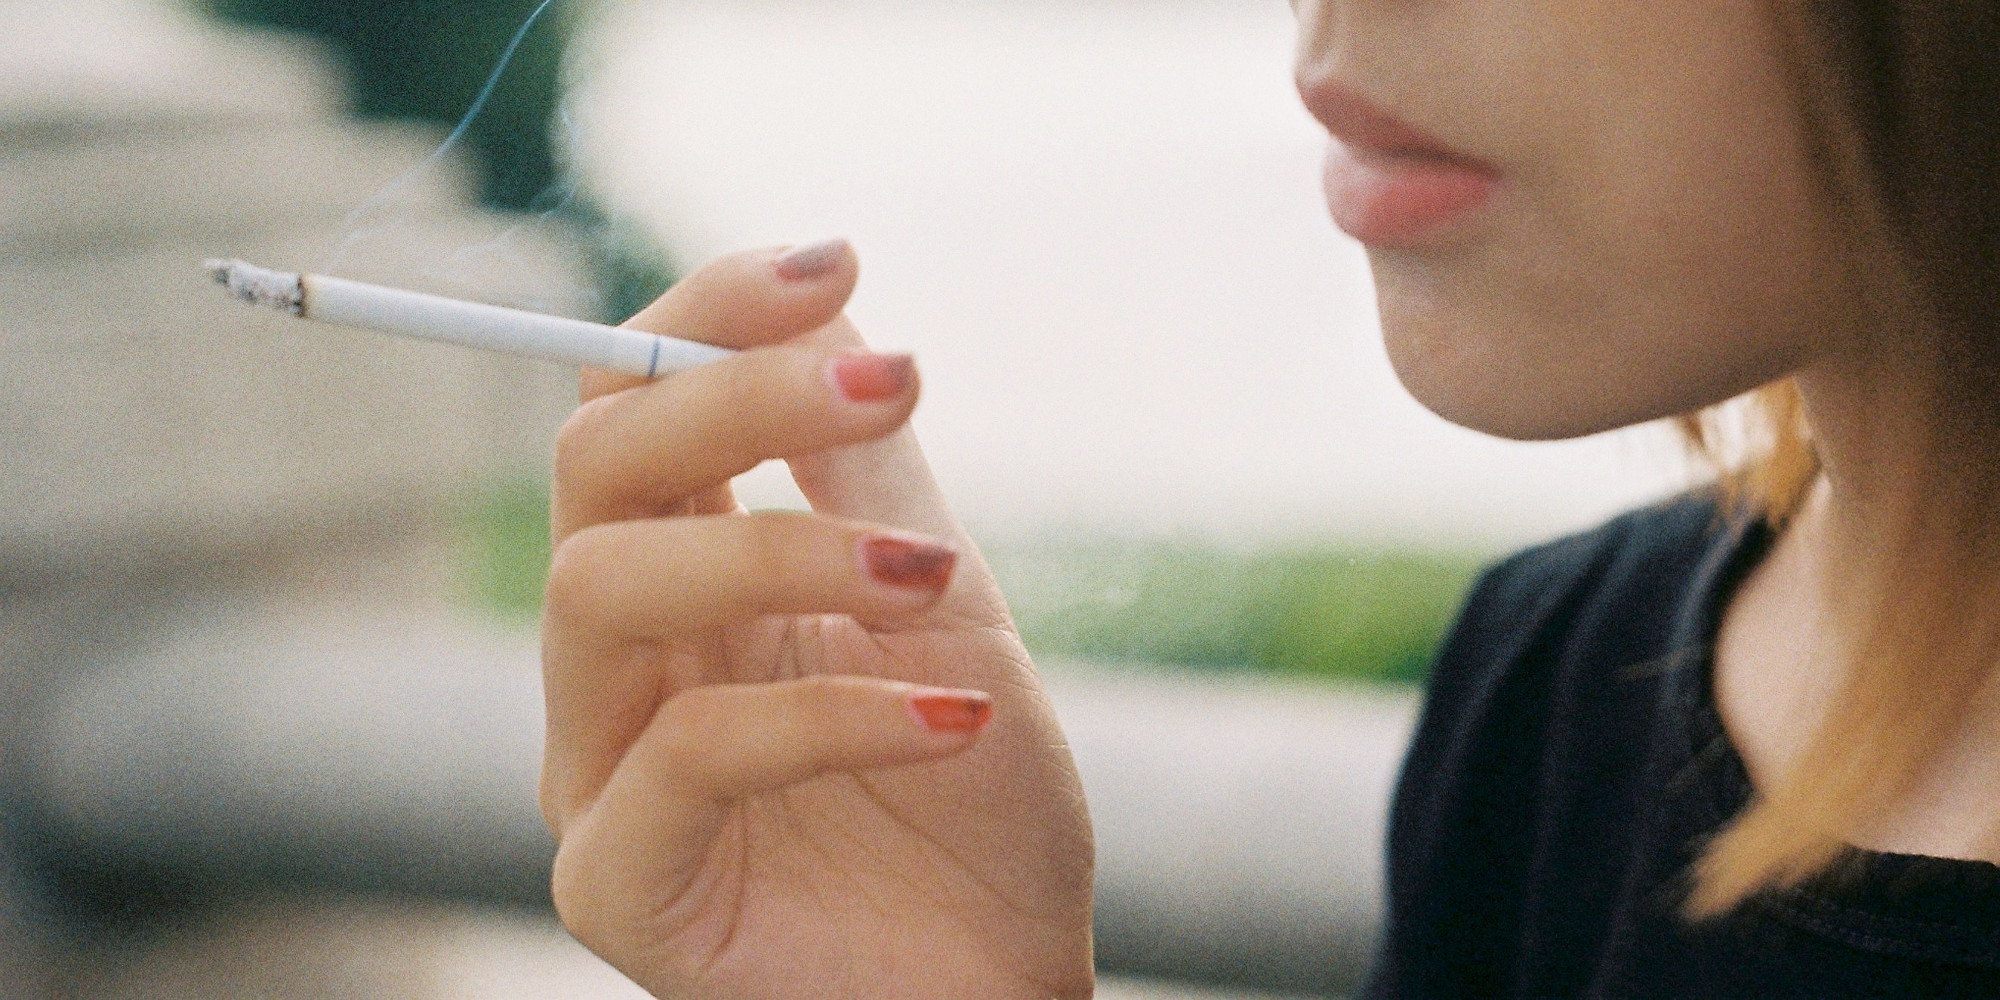 Το κάπνισμα μπορεί να επιταχύνει την εξέλιξη της πάθησης και να μειώσει την αποτελεσματικότητα των αγωγών